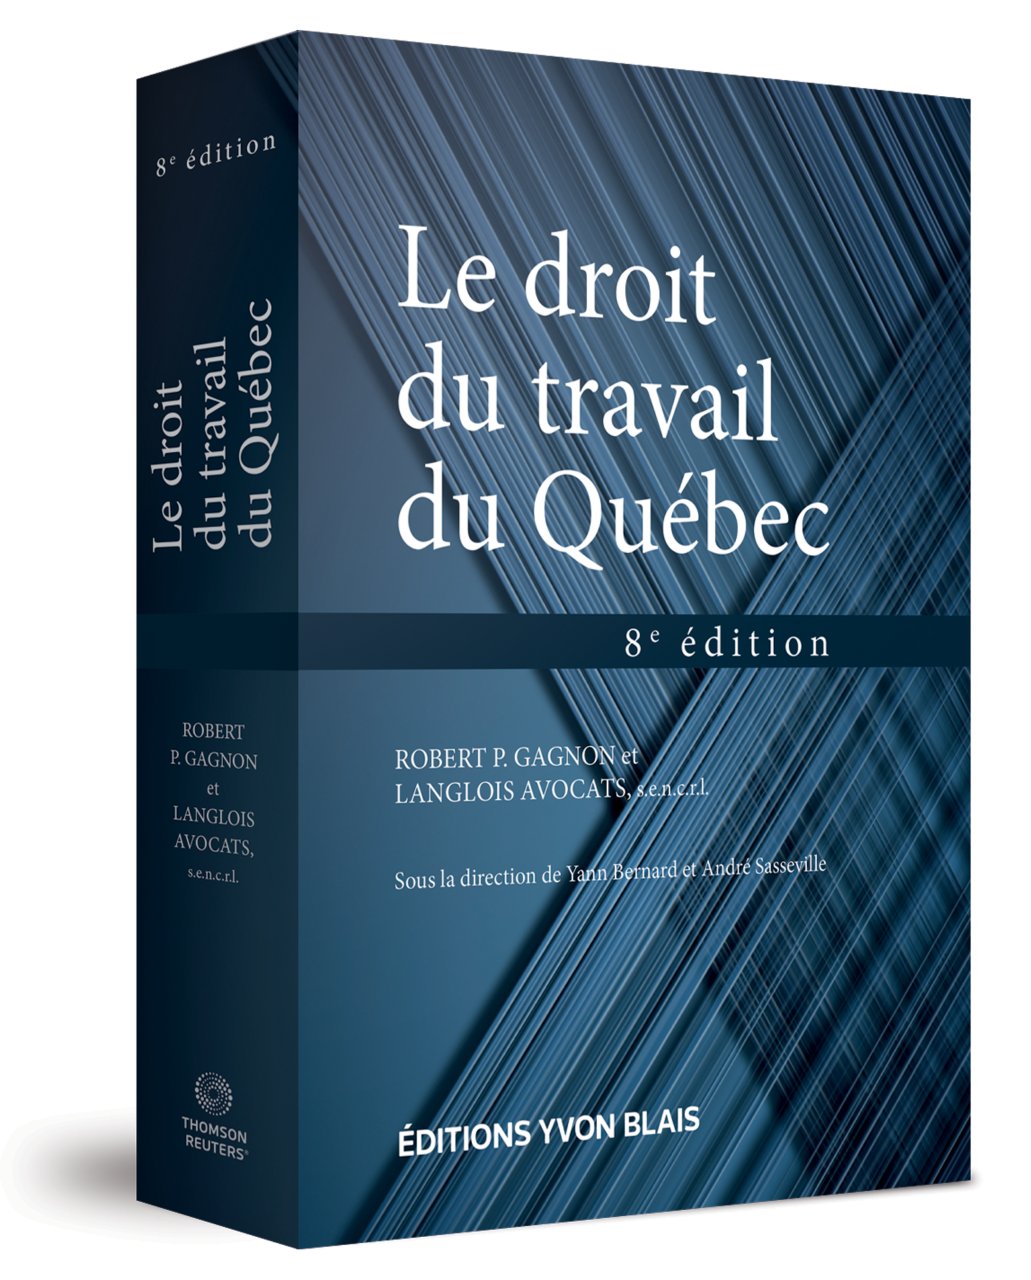 Le droit du travail du Québec, 8e édition